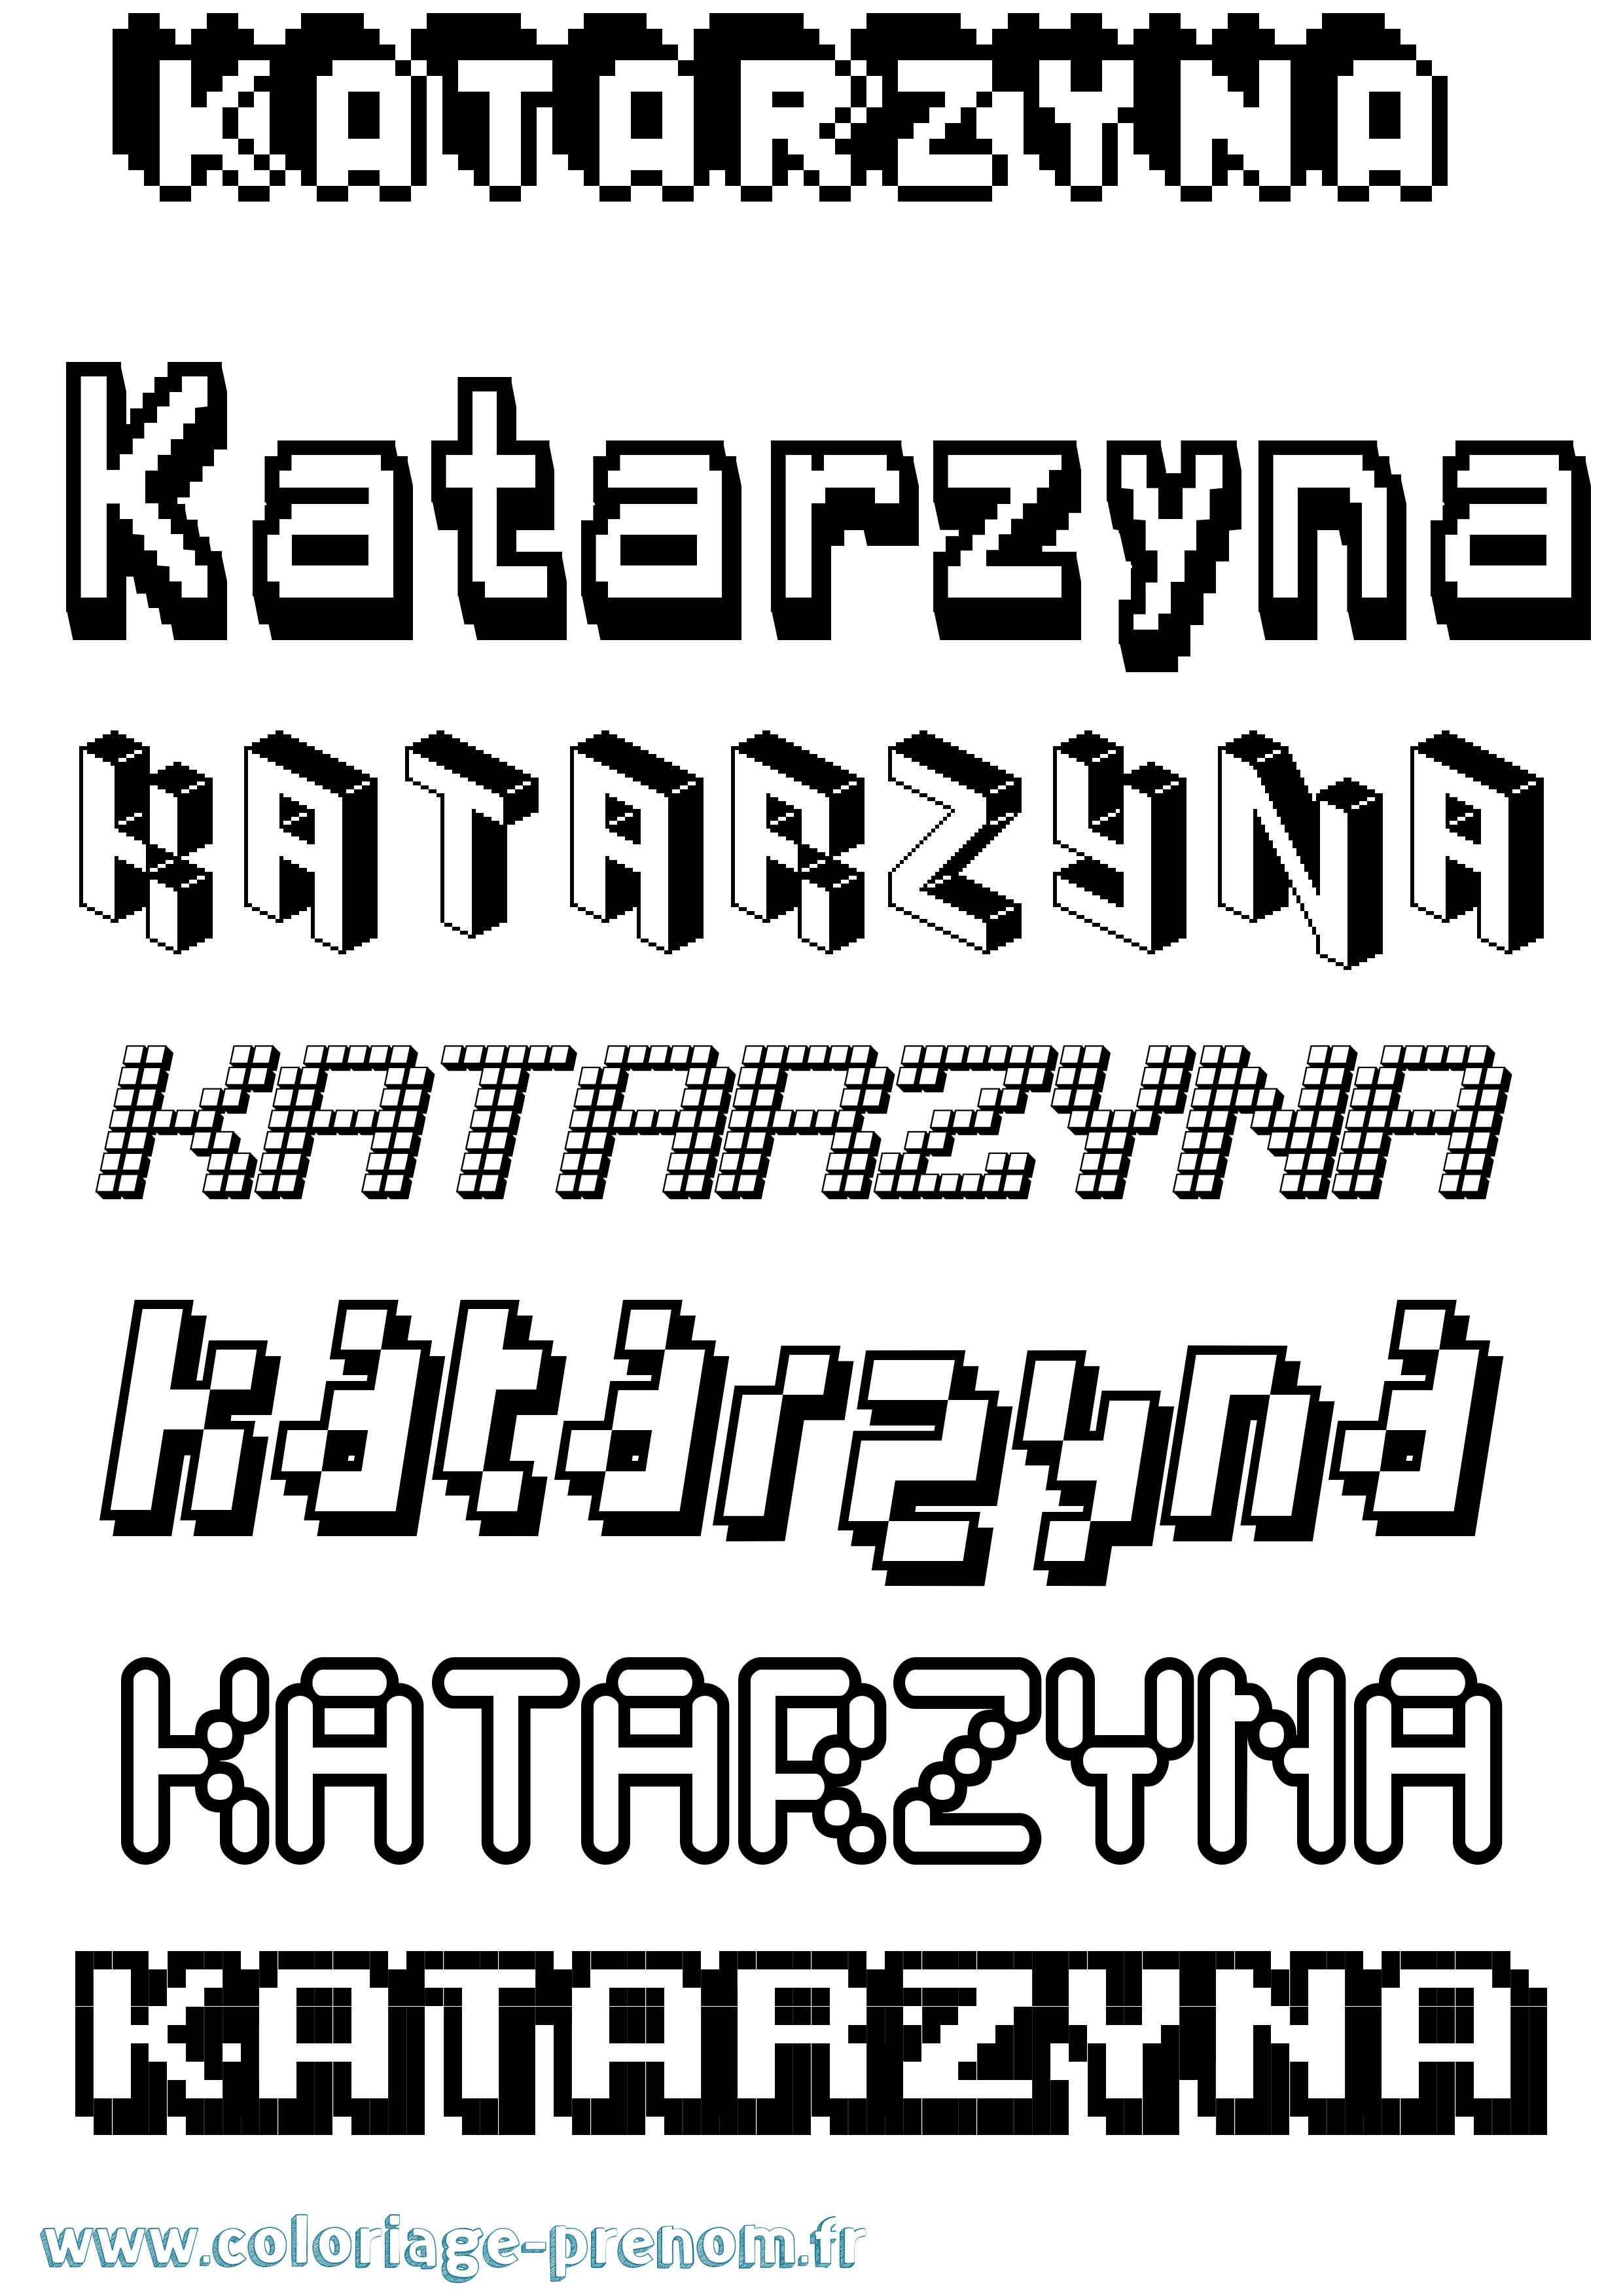 Coloriage prénom Katarzyna Pixel